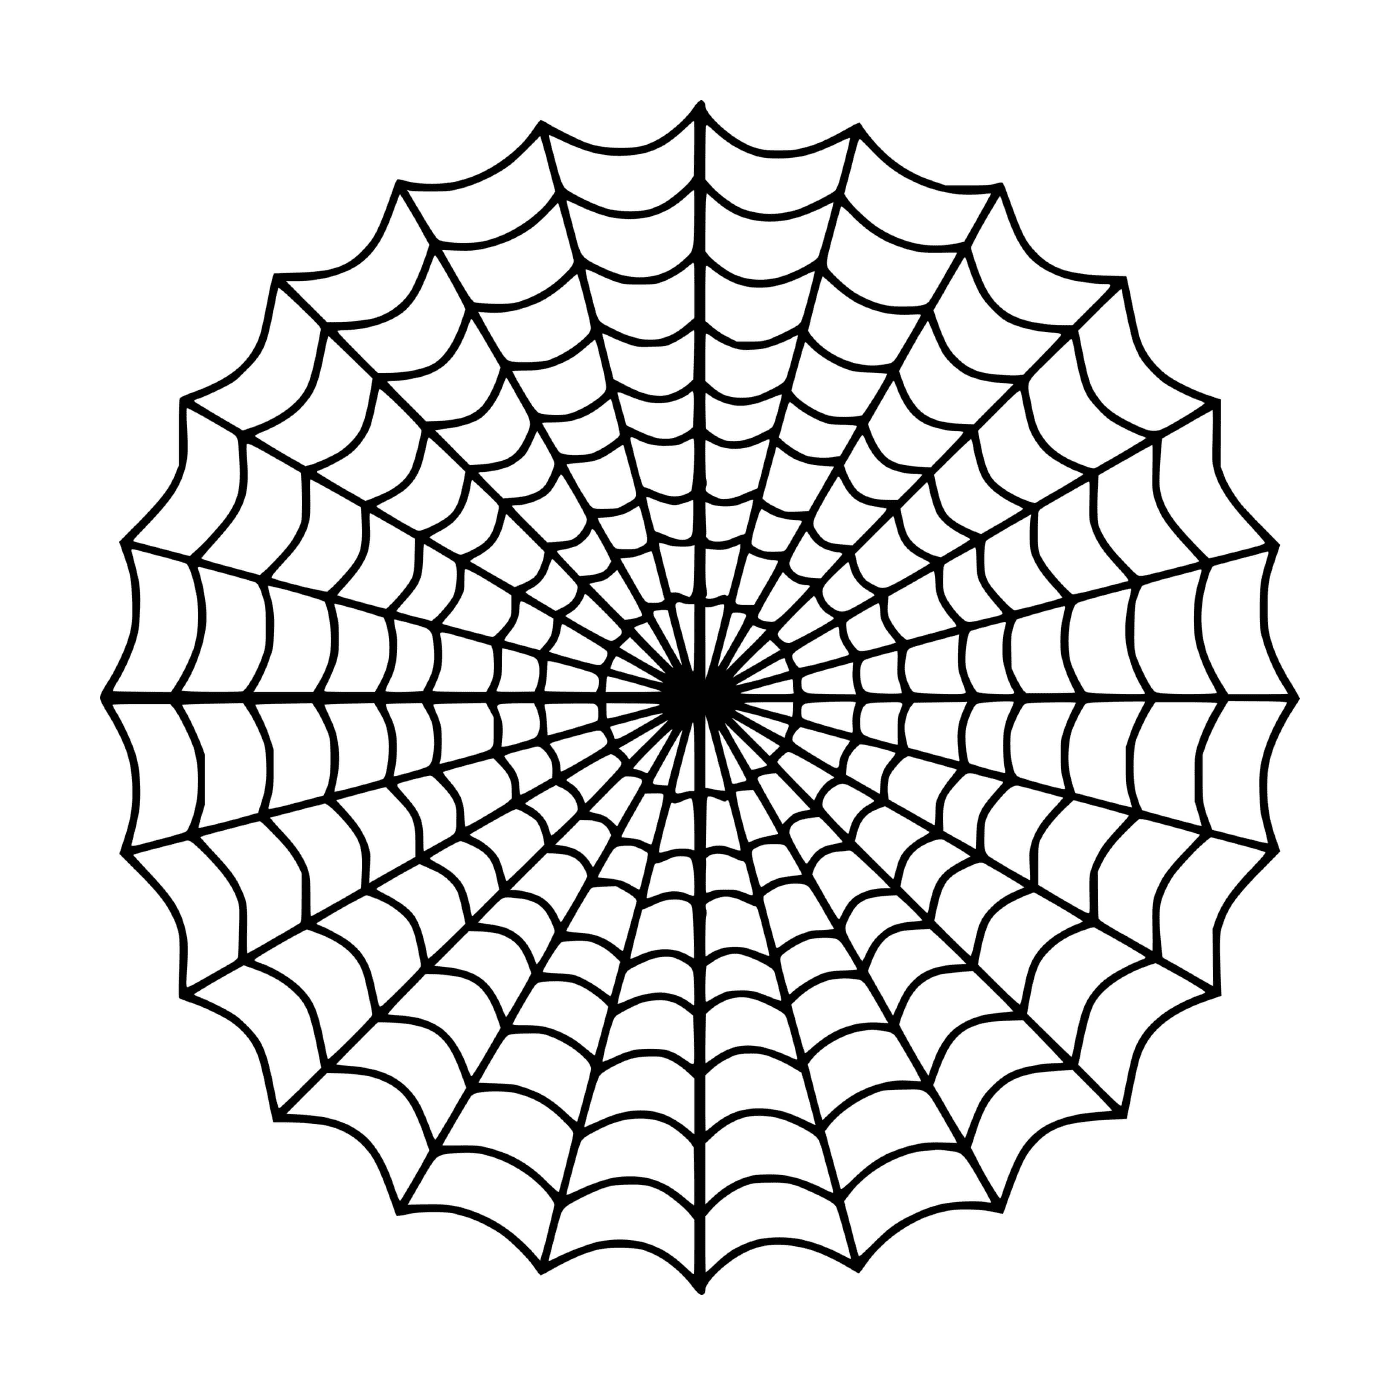  显示蜘蛛网 